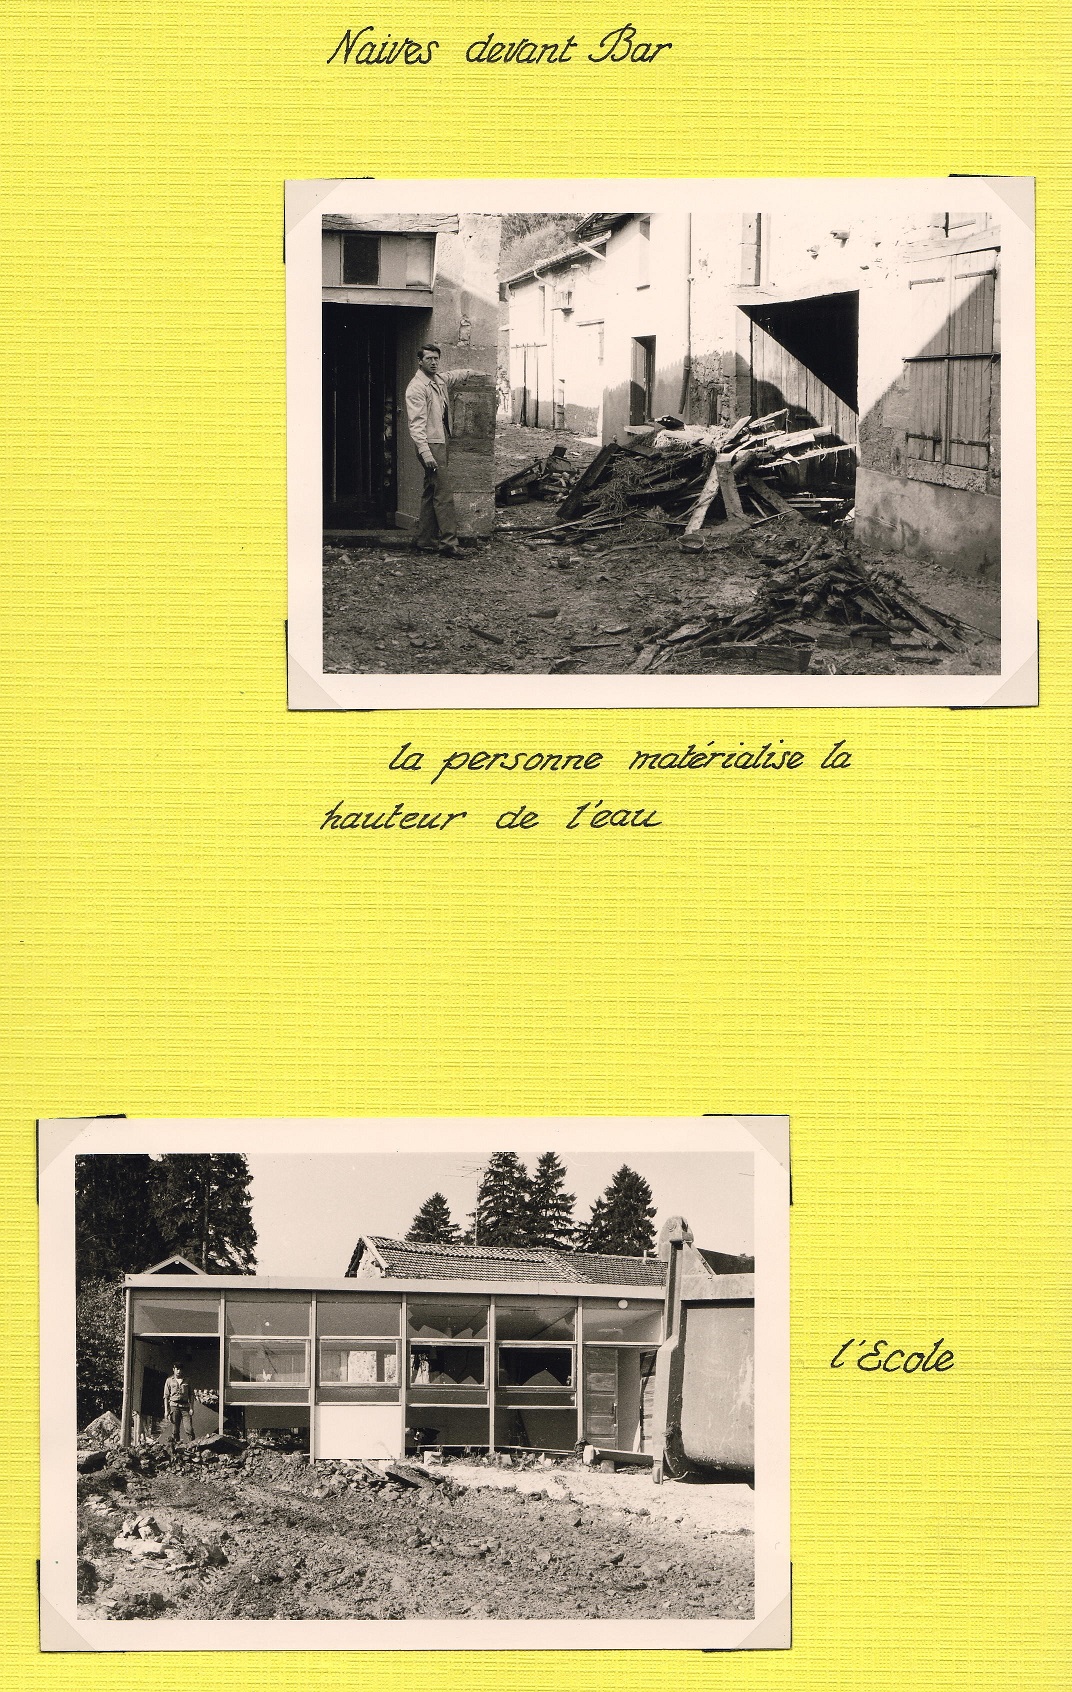 Naives-devant-Bar après la crue d’août 1972 (DDE 55 – Album de photographies).